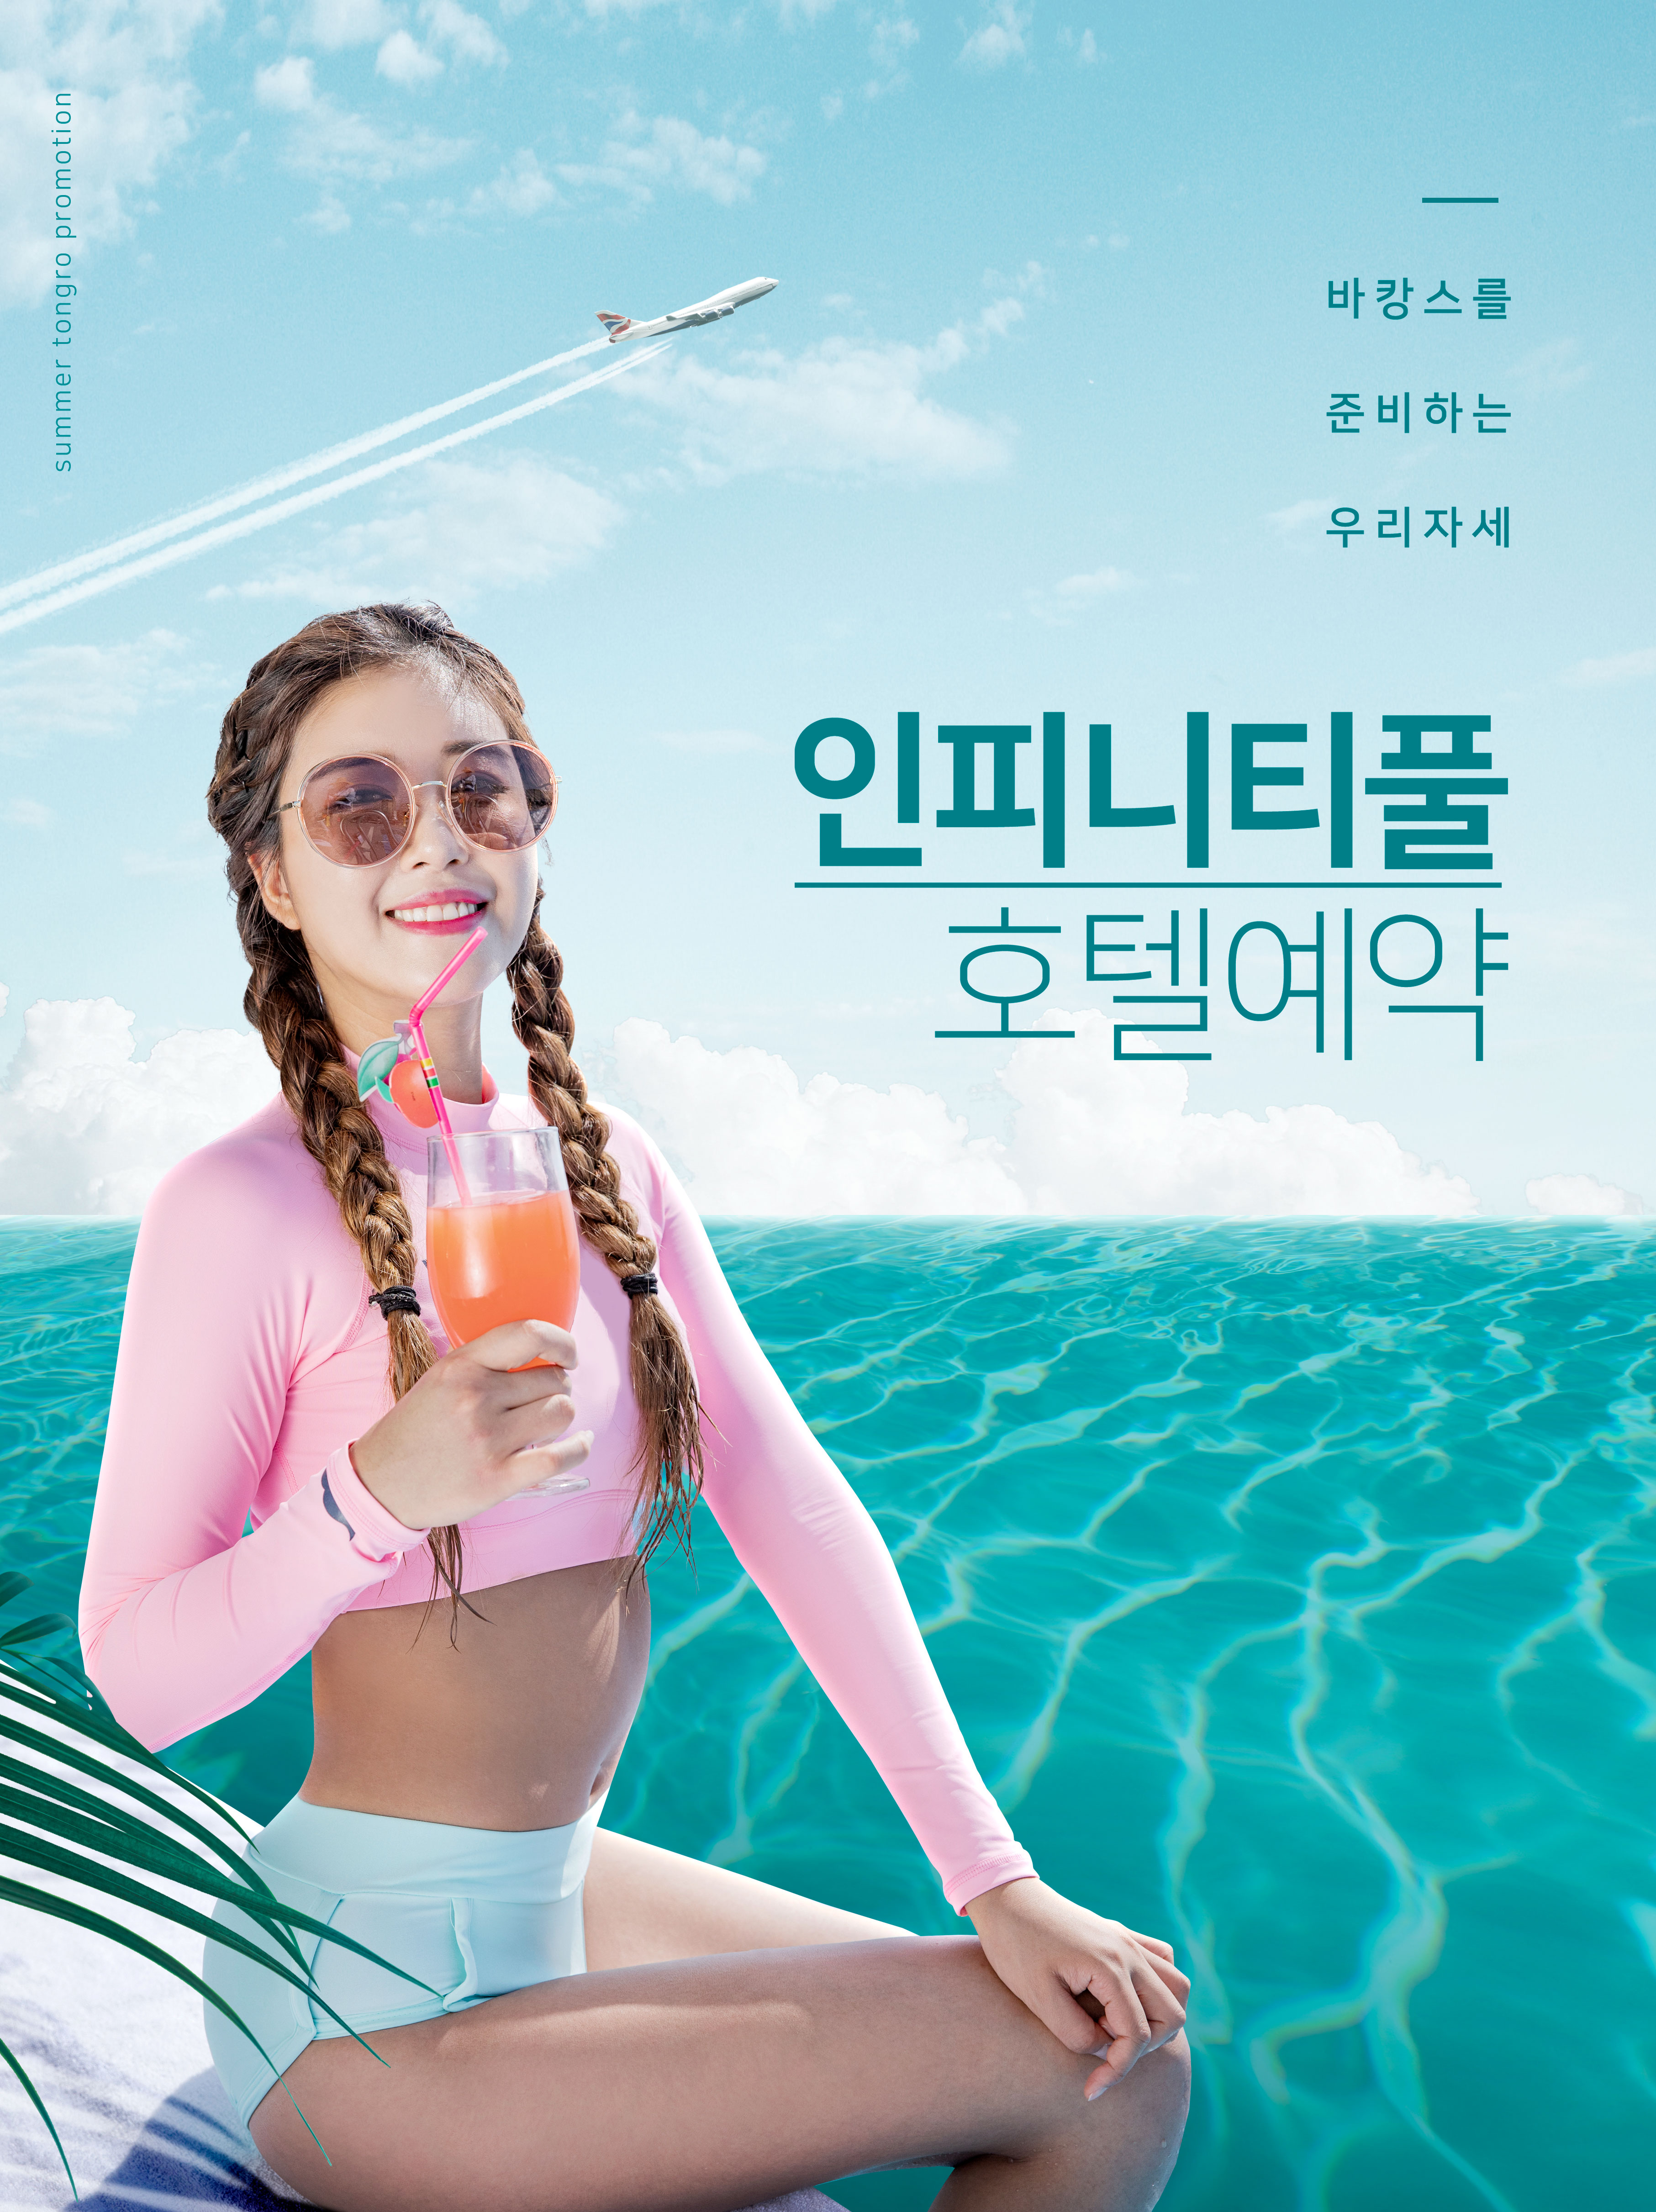 夏季海滩度假活动广告海报模板插图